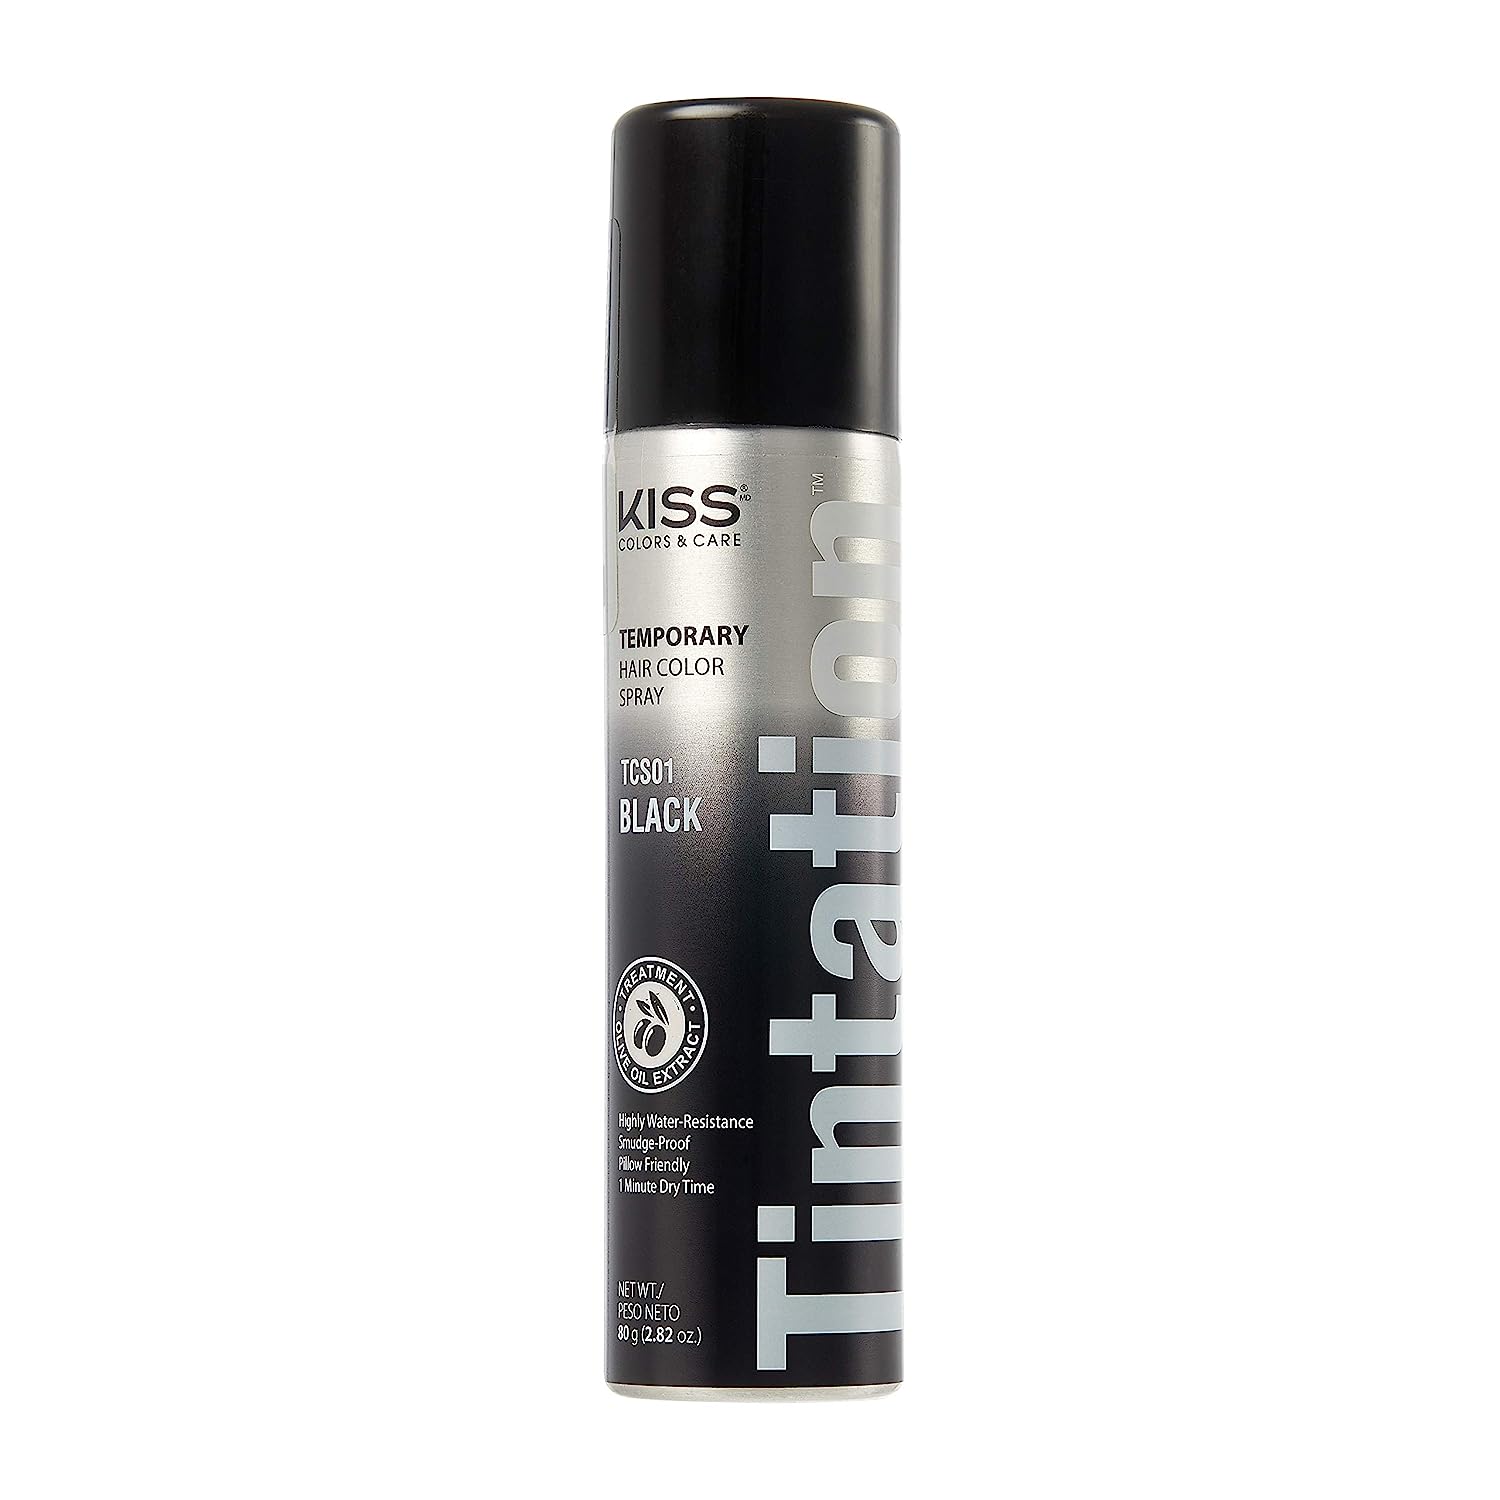 KISS Tintation Temporary Hair Color Spray (TCS01 - Black)